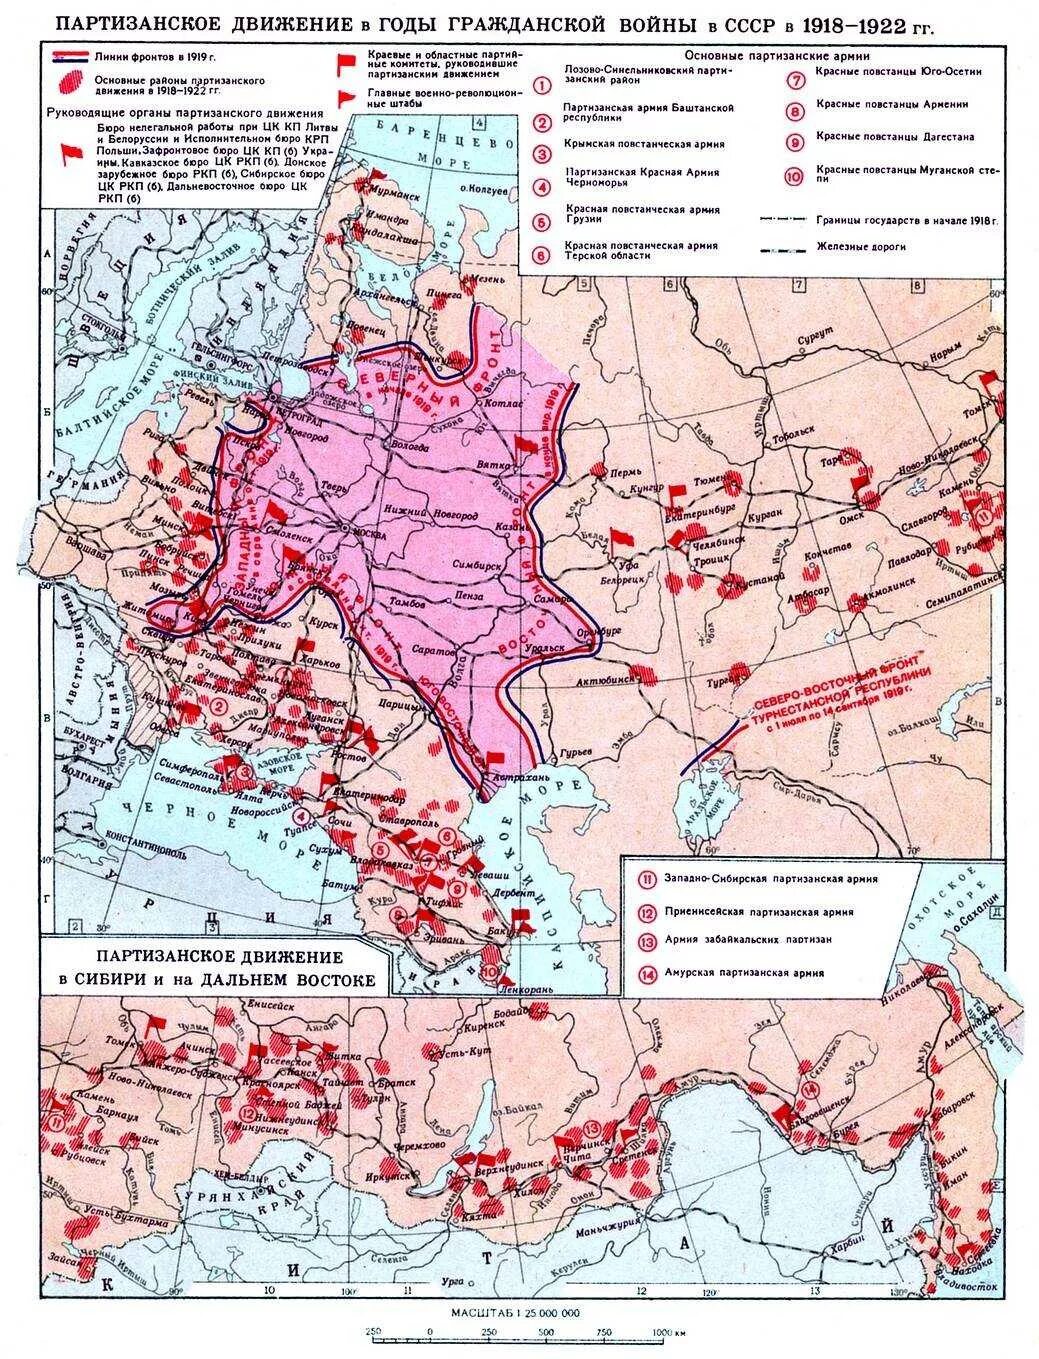 Зоны во время войны. Карта гражданской войны с СССР. Карта партизанского движения в годы Великой Отечественной.